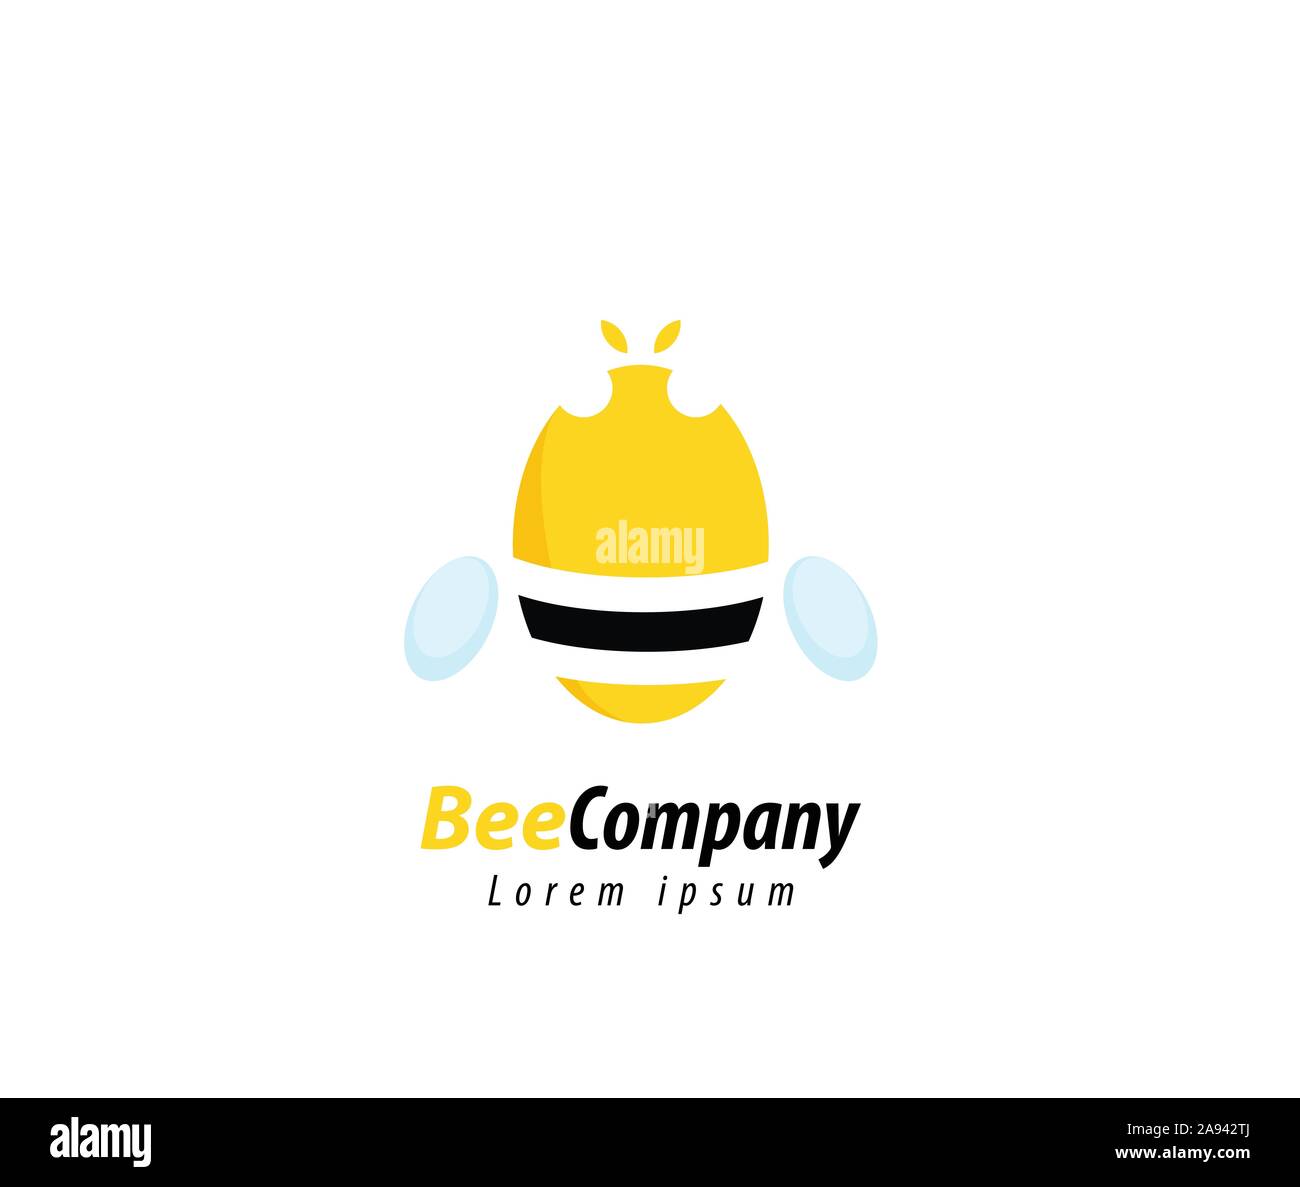 bee company